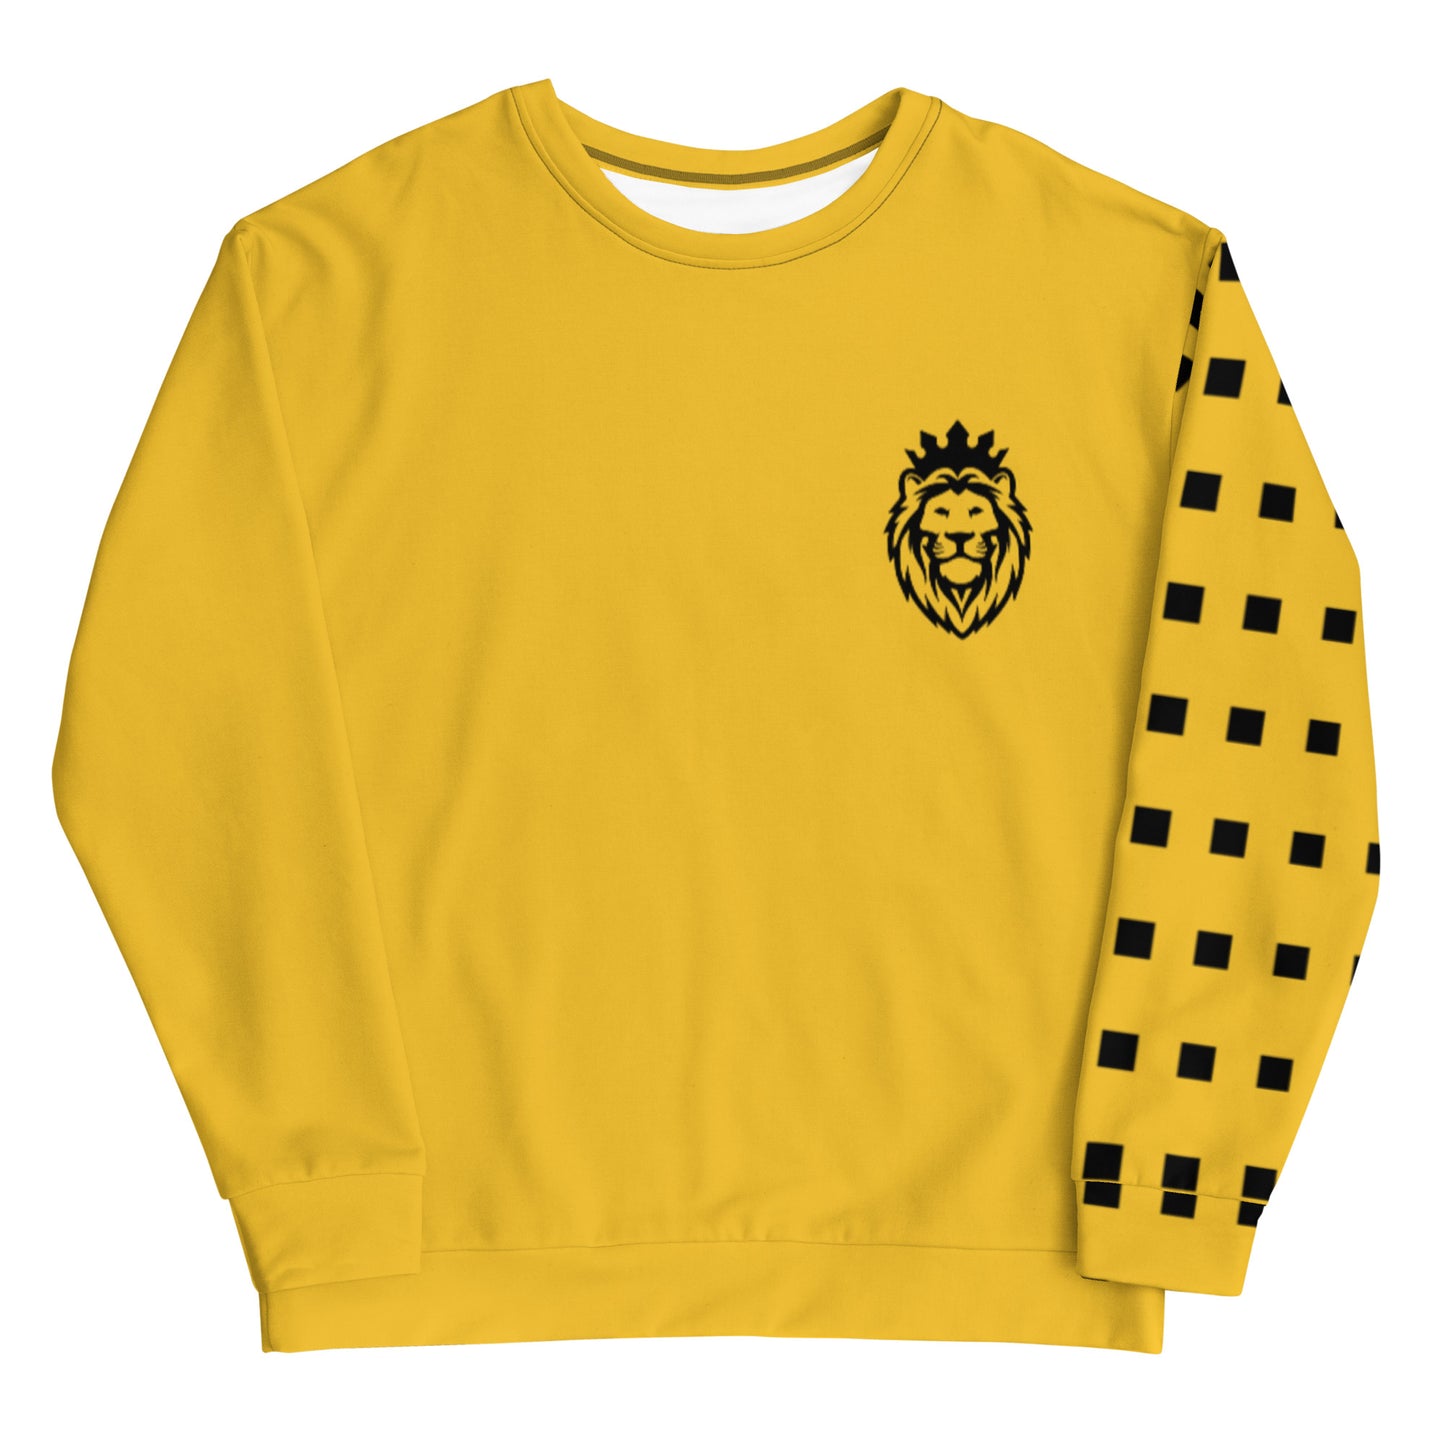 Yellow Abstract Sleeve Sweatshirt